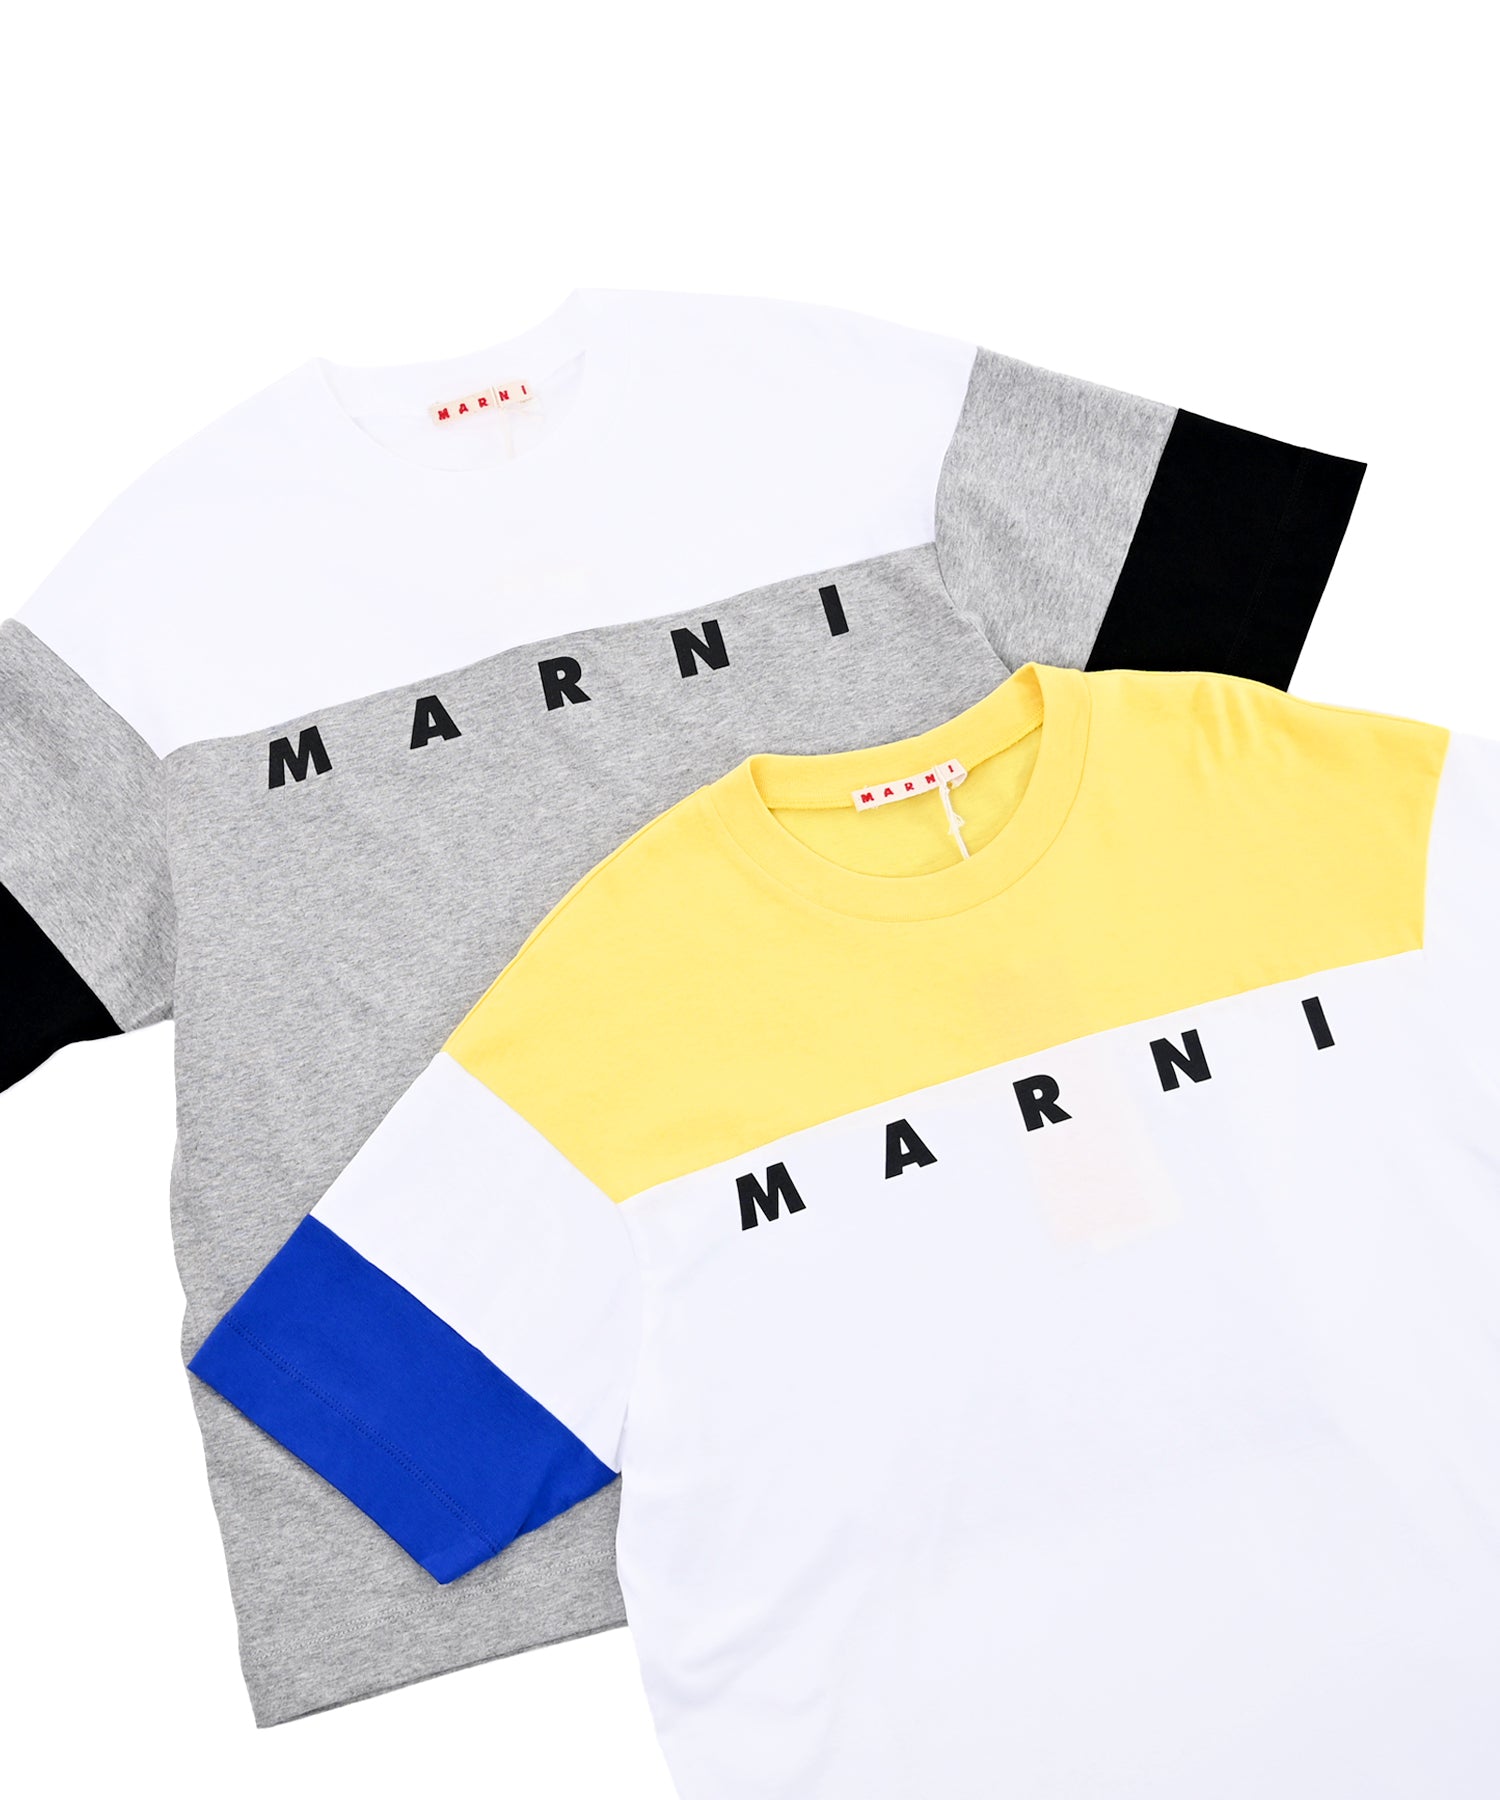 【新品・未使用】MARNI KIDS ロゴ コットンTシャツ 14Y